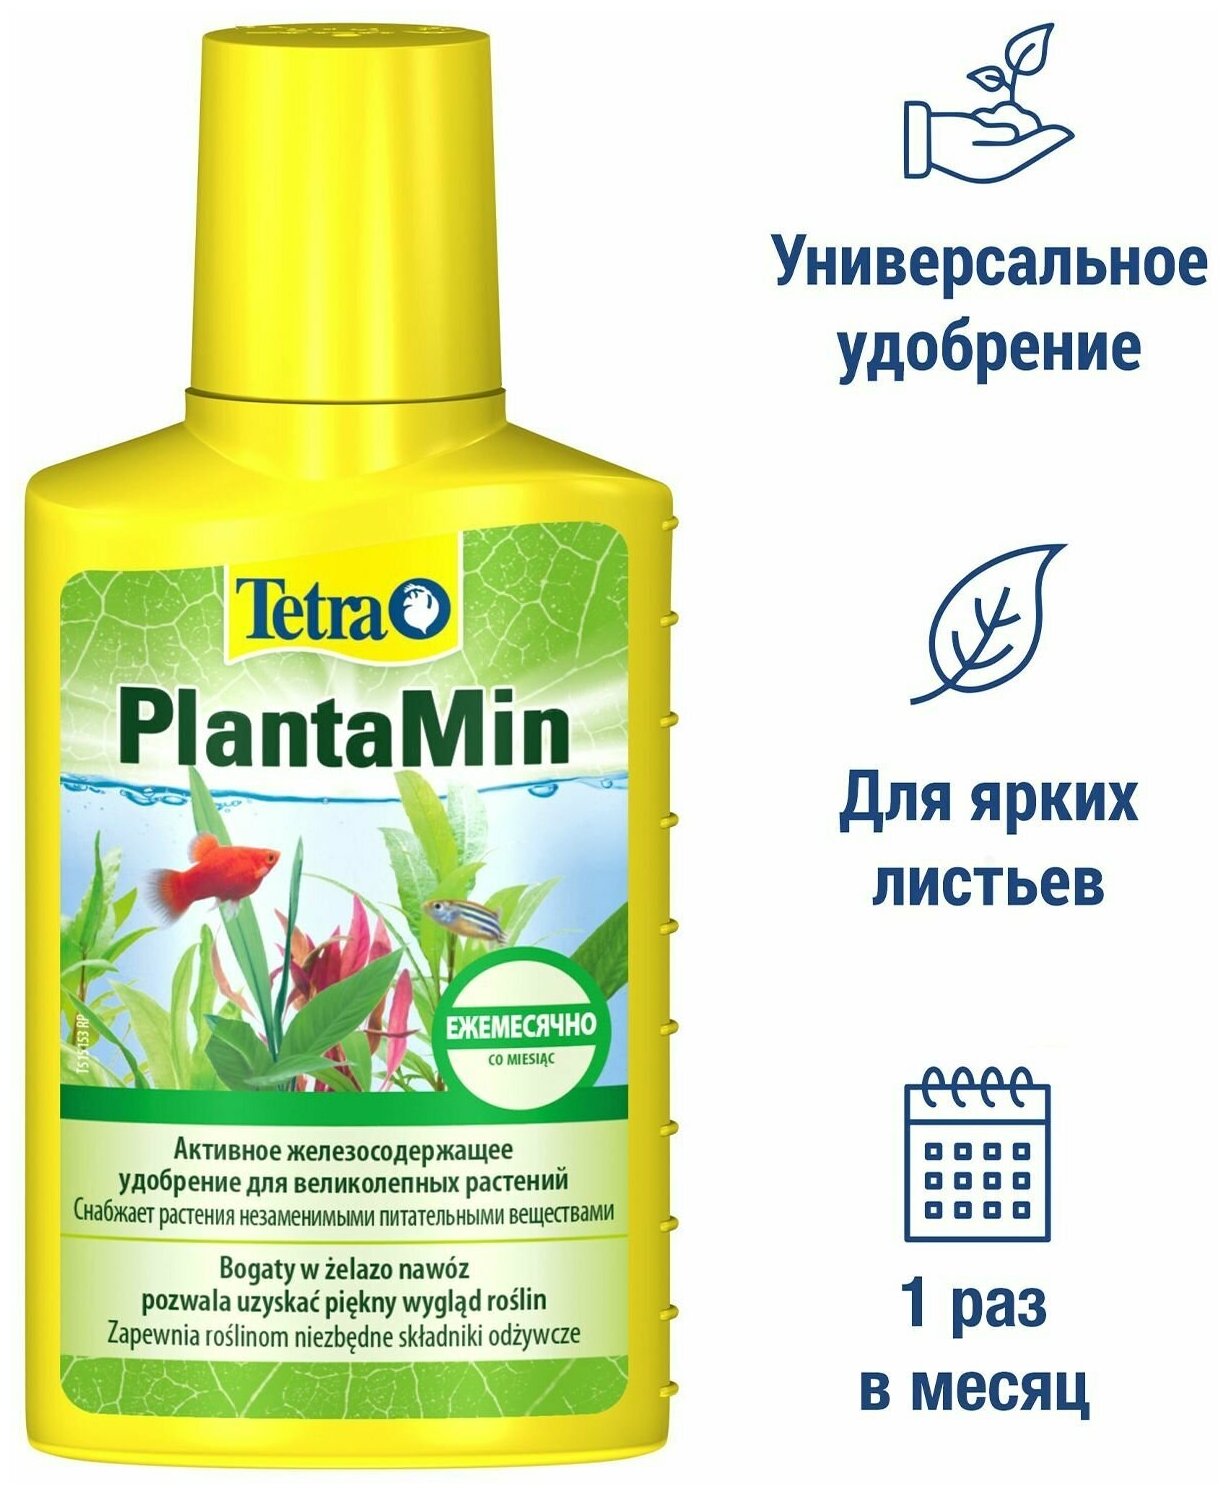 Жидкое удобрение Tetra Tetra PlantaMin 250 мл, железосодержащее, для пышного роста аквариумных растений